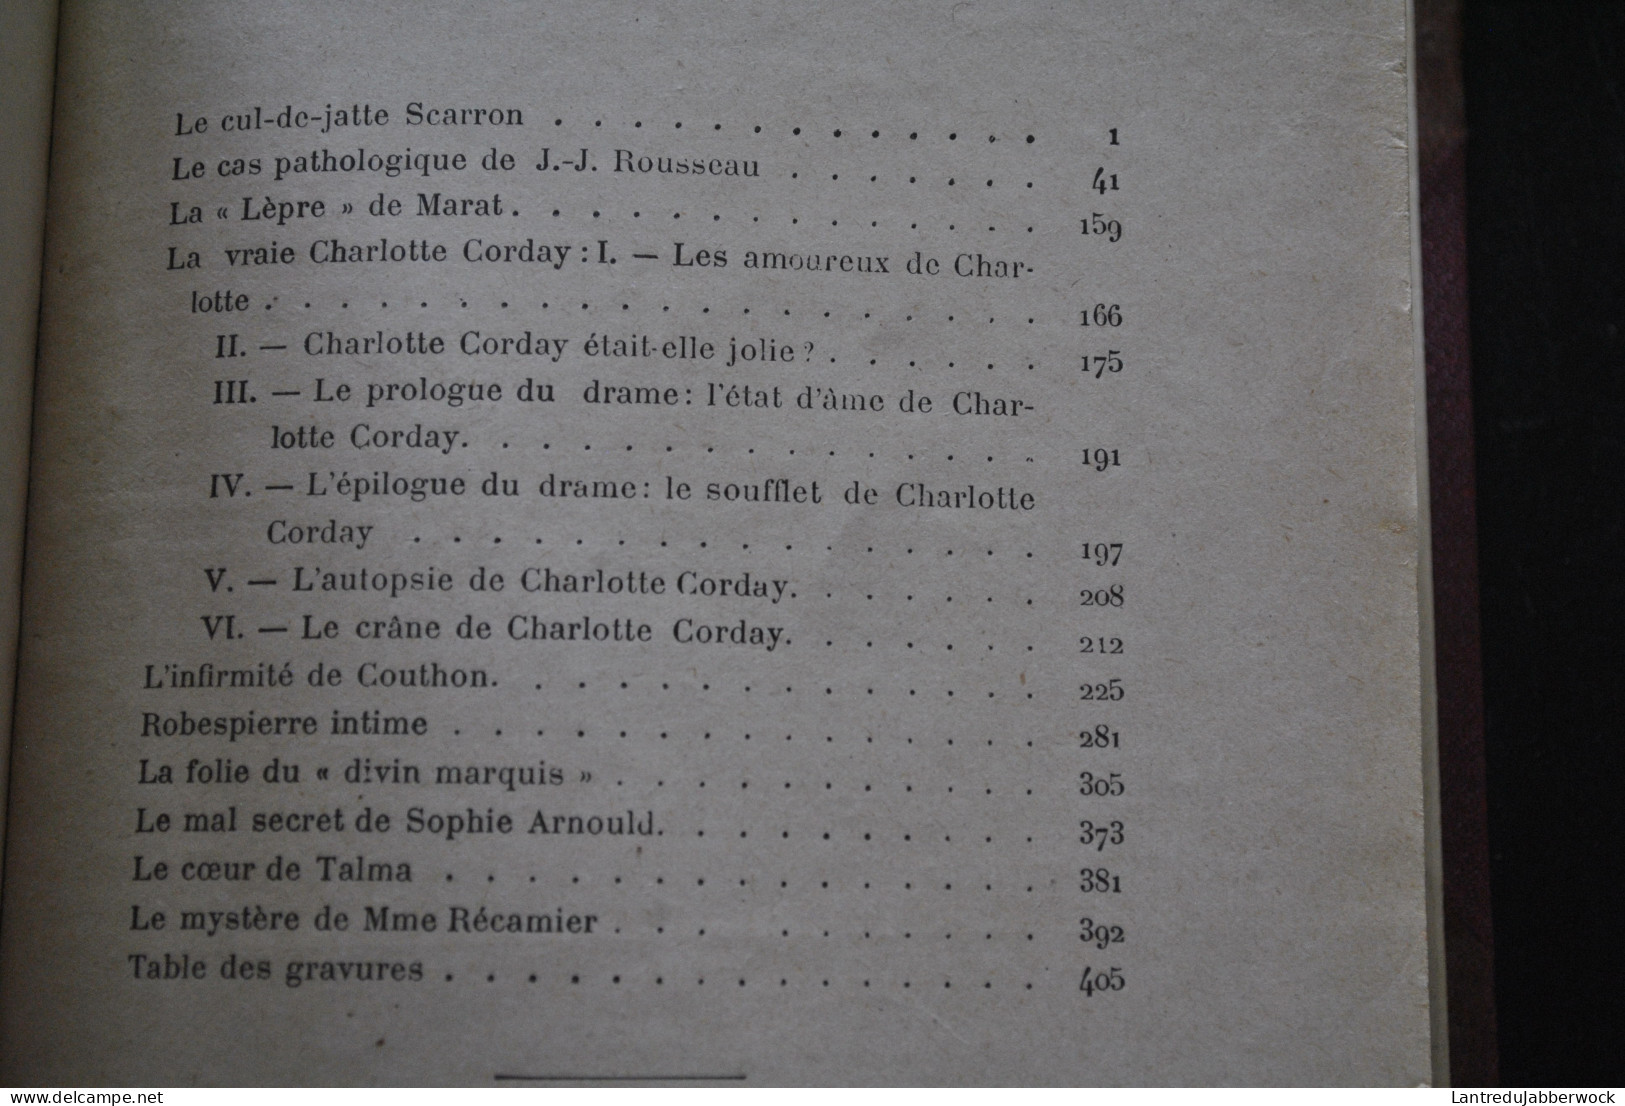 DOCTEUR CABANES CABINET SECRET DE L'HISTOIRE Volumes 1 2 3 4 COMPLET (????) RELIURE CUIR liseré doré Albin Michel 1906